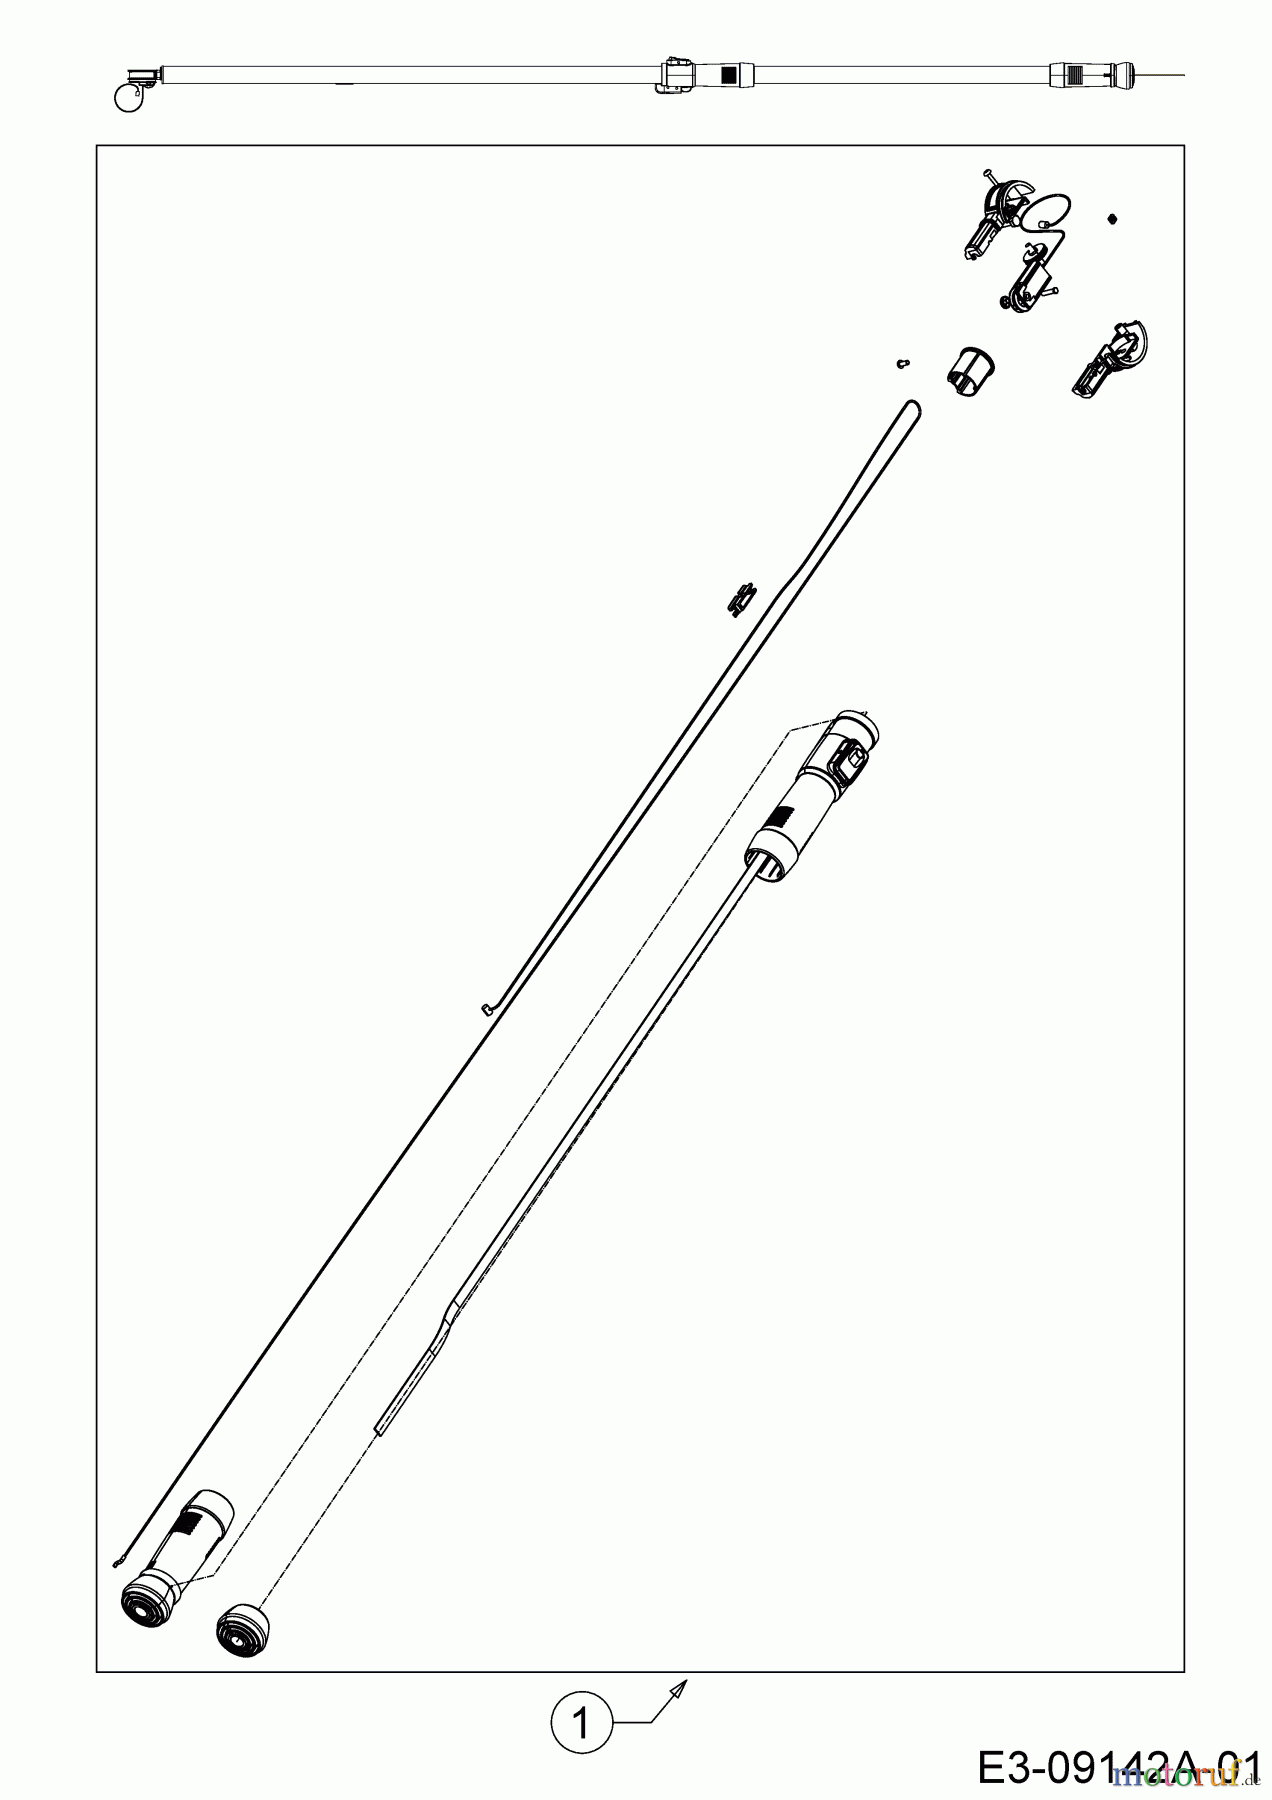  Wolf-Garten Astscheren (Zweischneidig) PDC RR 200 73ACA001650  (2015) Grundgerät